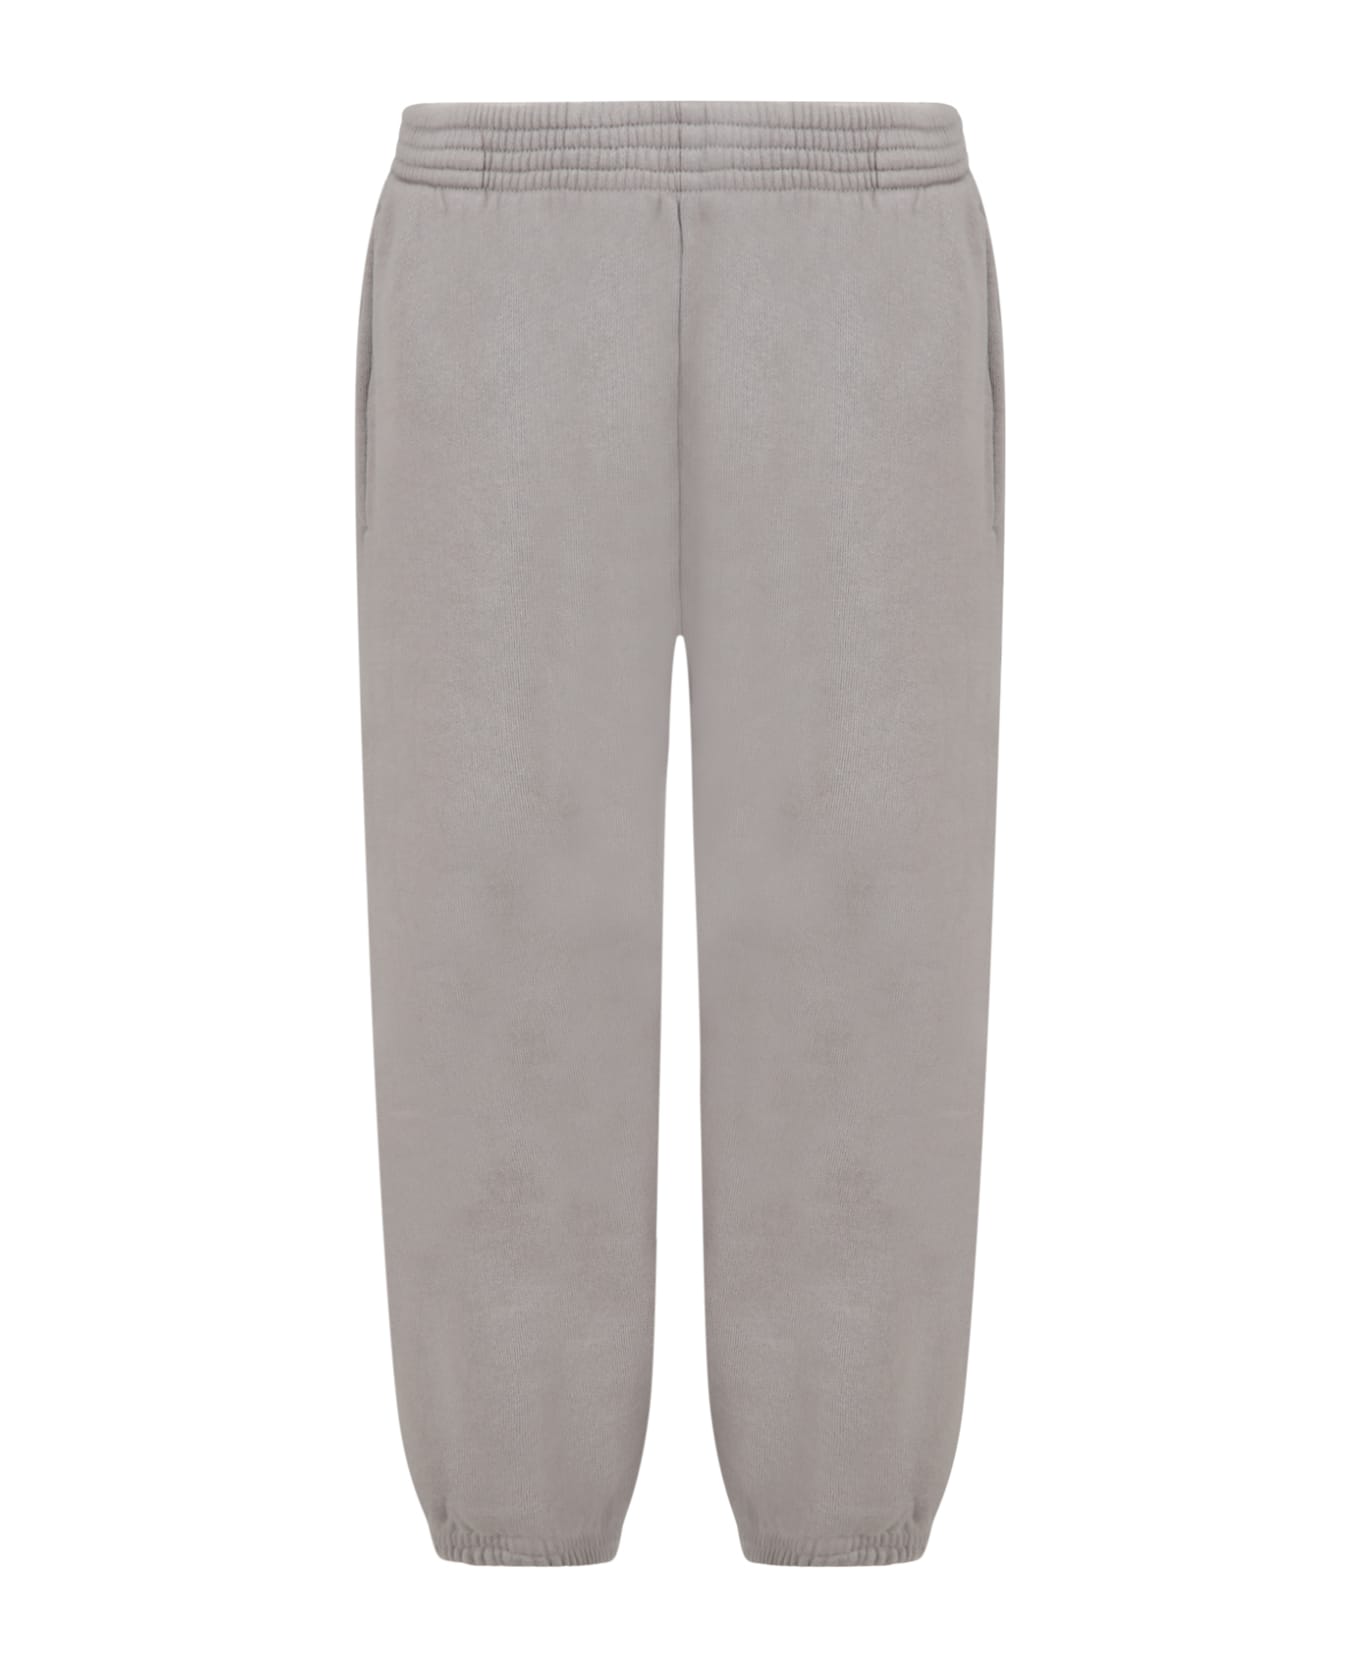 Balenciaga Grey Sweatpant For Kids - Grey ボトムス